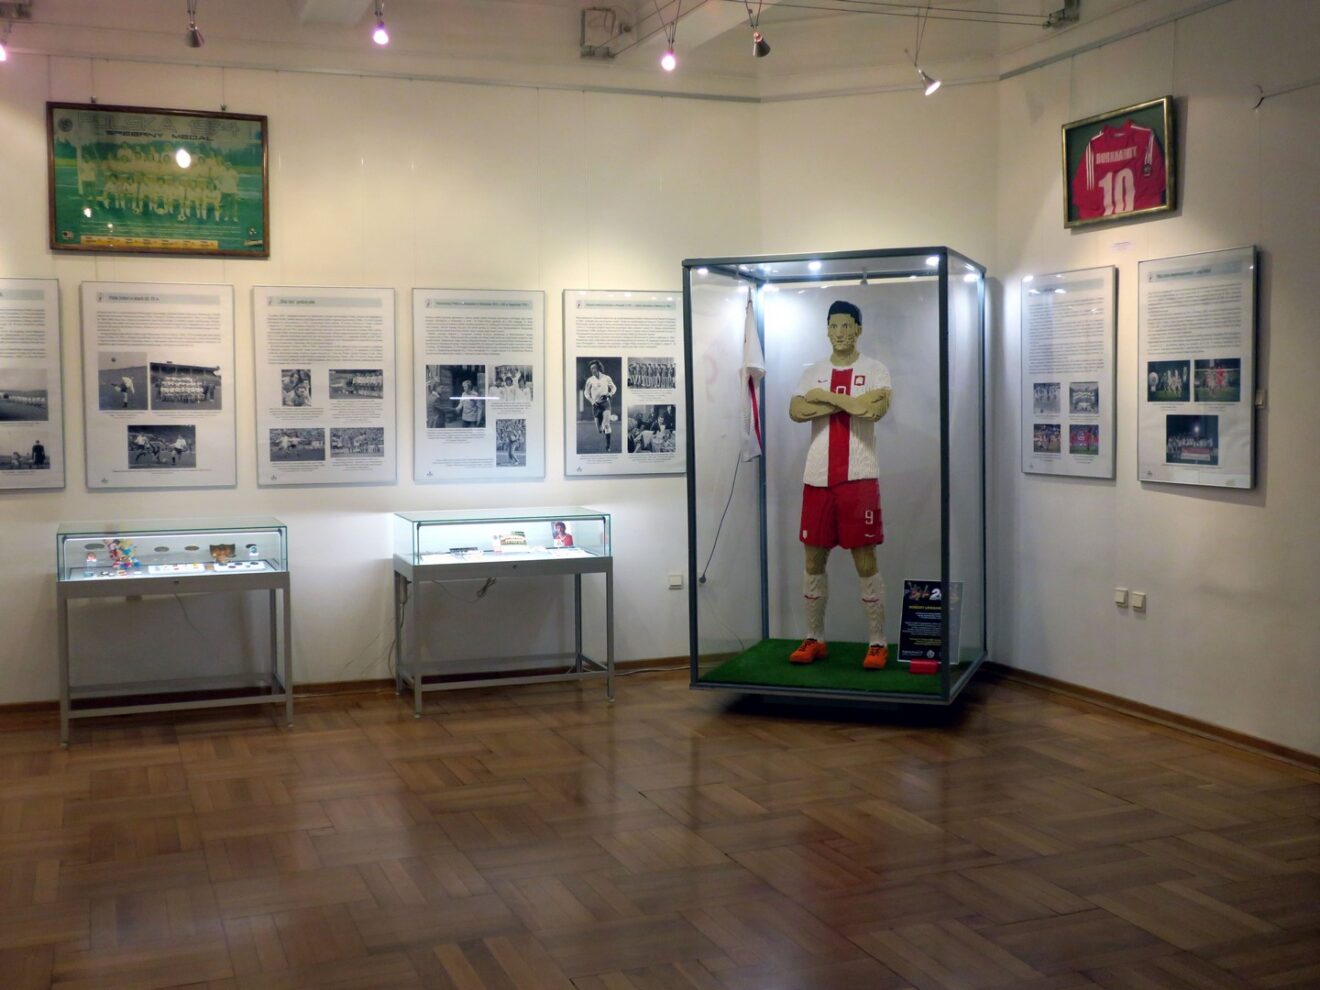 Fragment wystawy z widoczną postacią Robert Lewandowskiego w stroju reprezentacyjnym złożona z kocków lego. Obok fotoramy ze djęciami i gaploty z eksponatami.